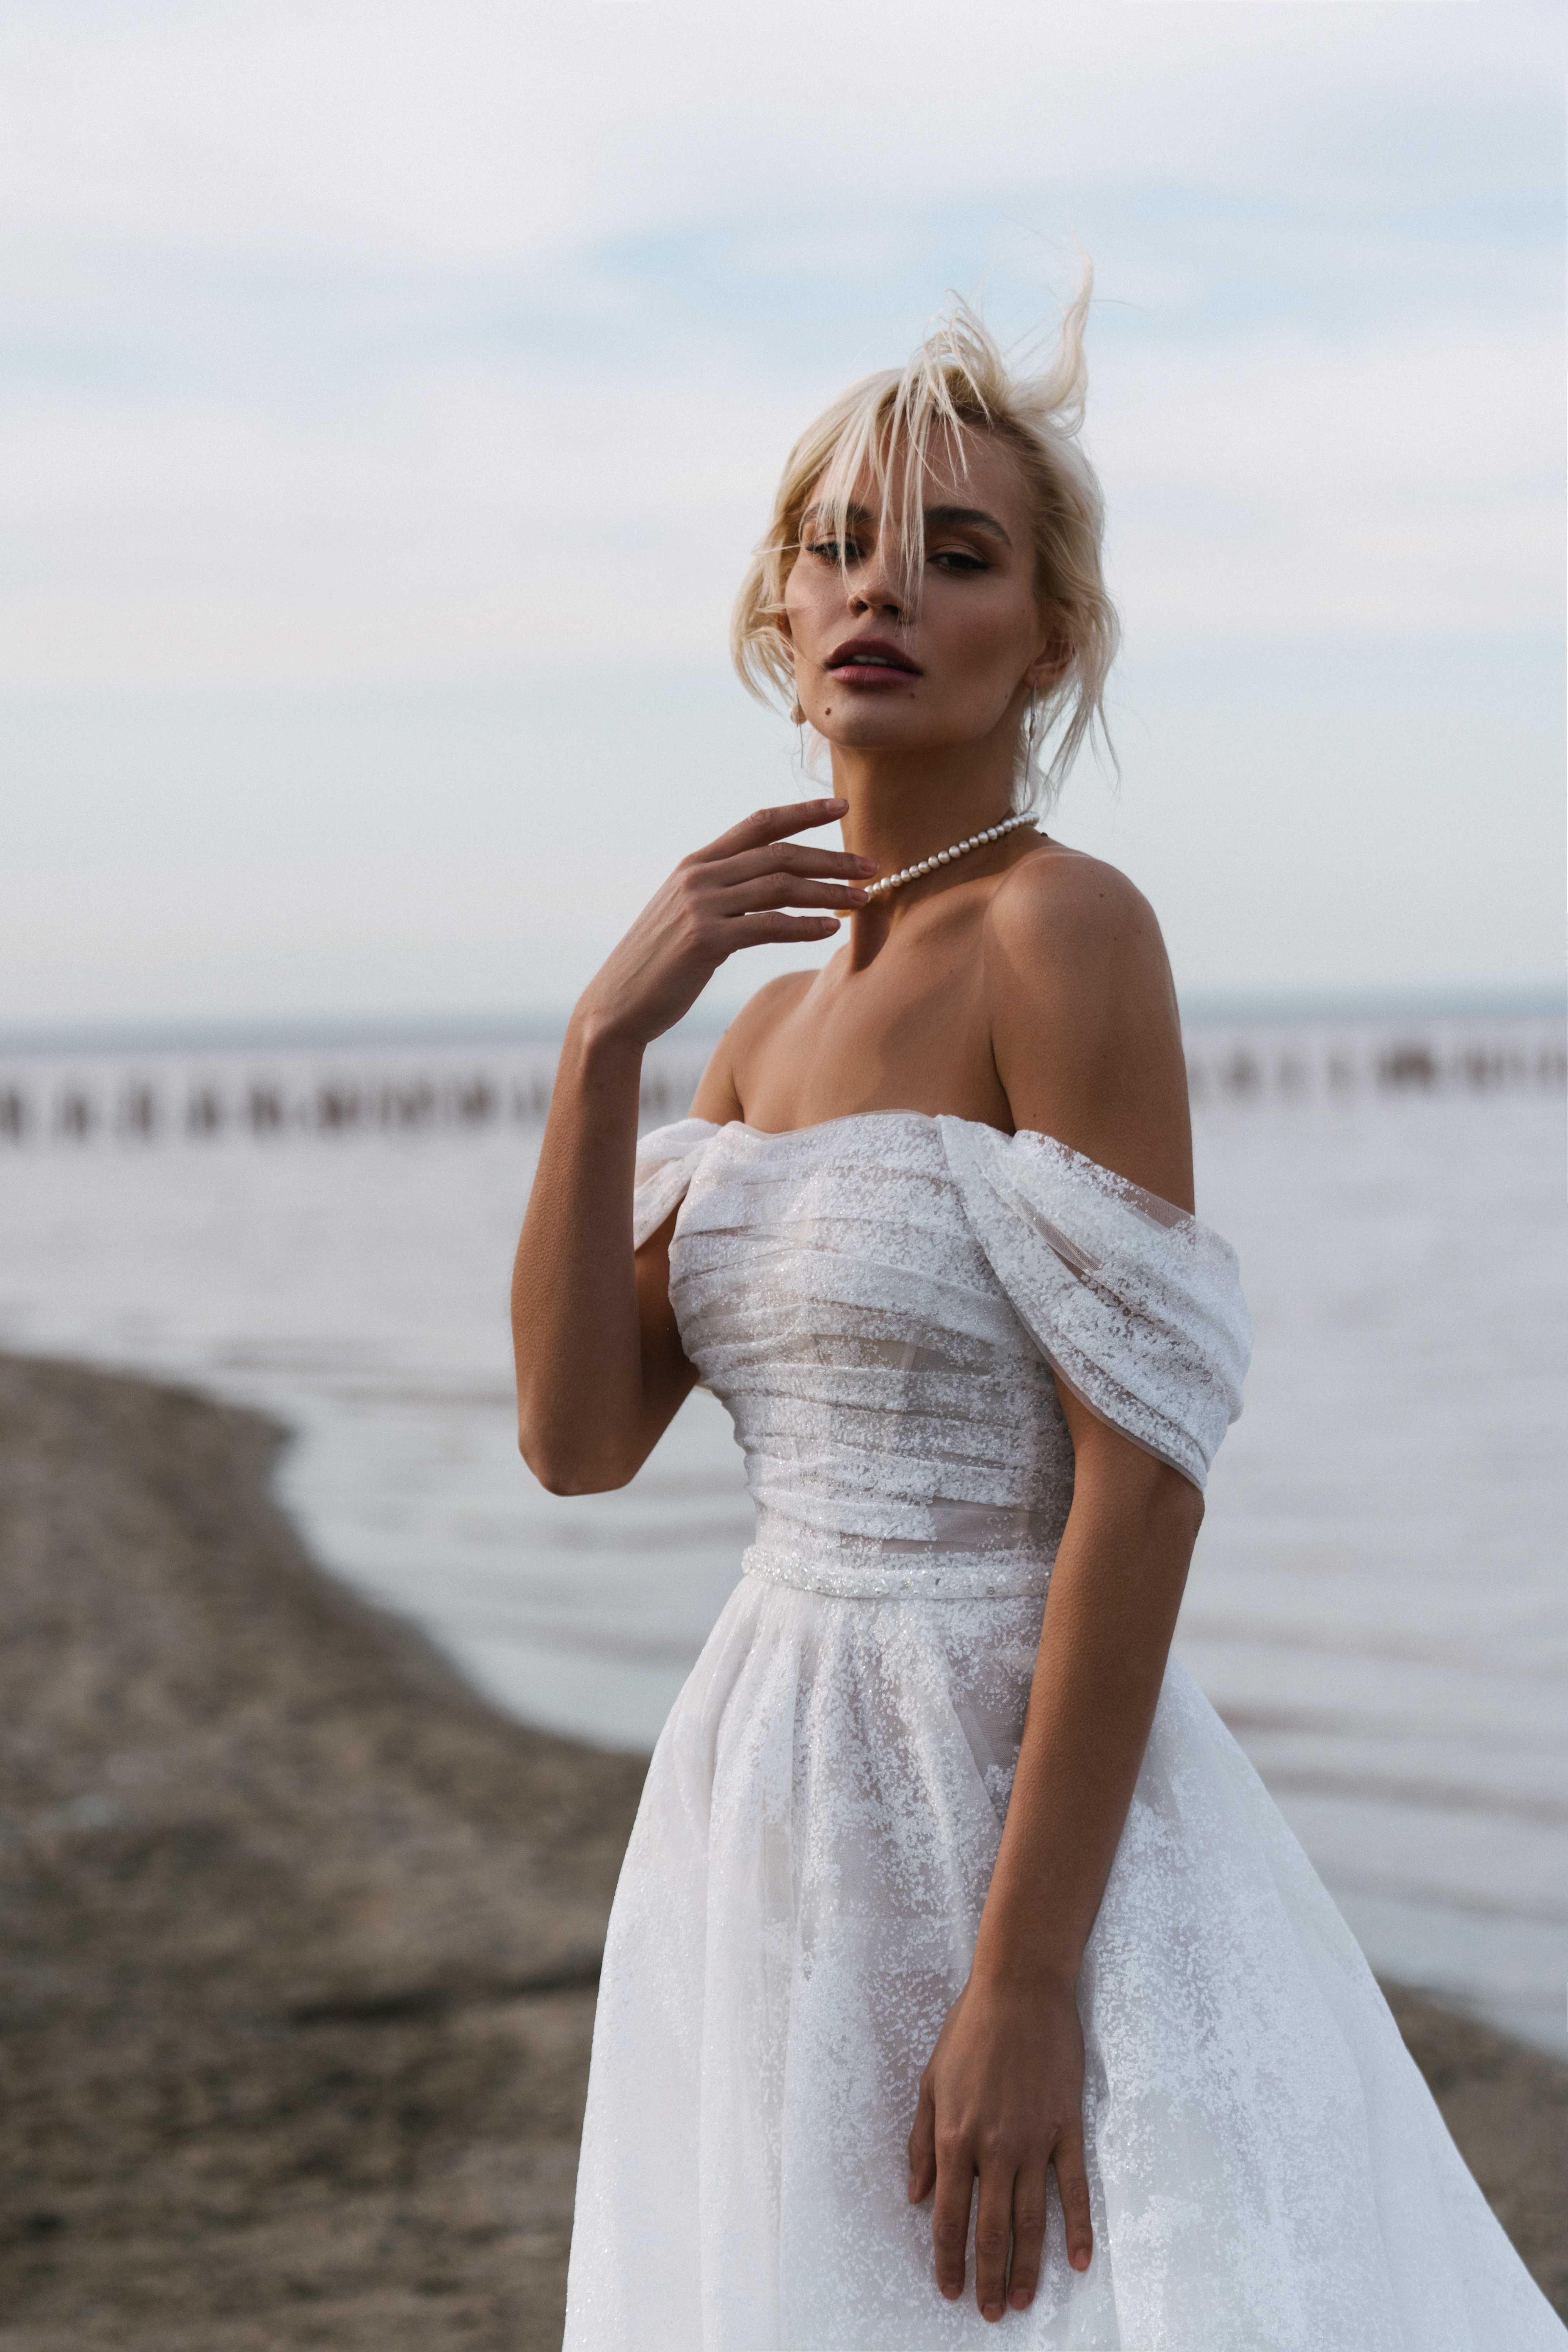 Купить свадебное платье «Моана» Наталья Романова из коллекции Блаш 2022 года в салоне «Мэри Трюфель»